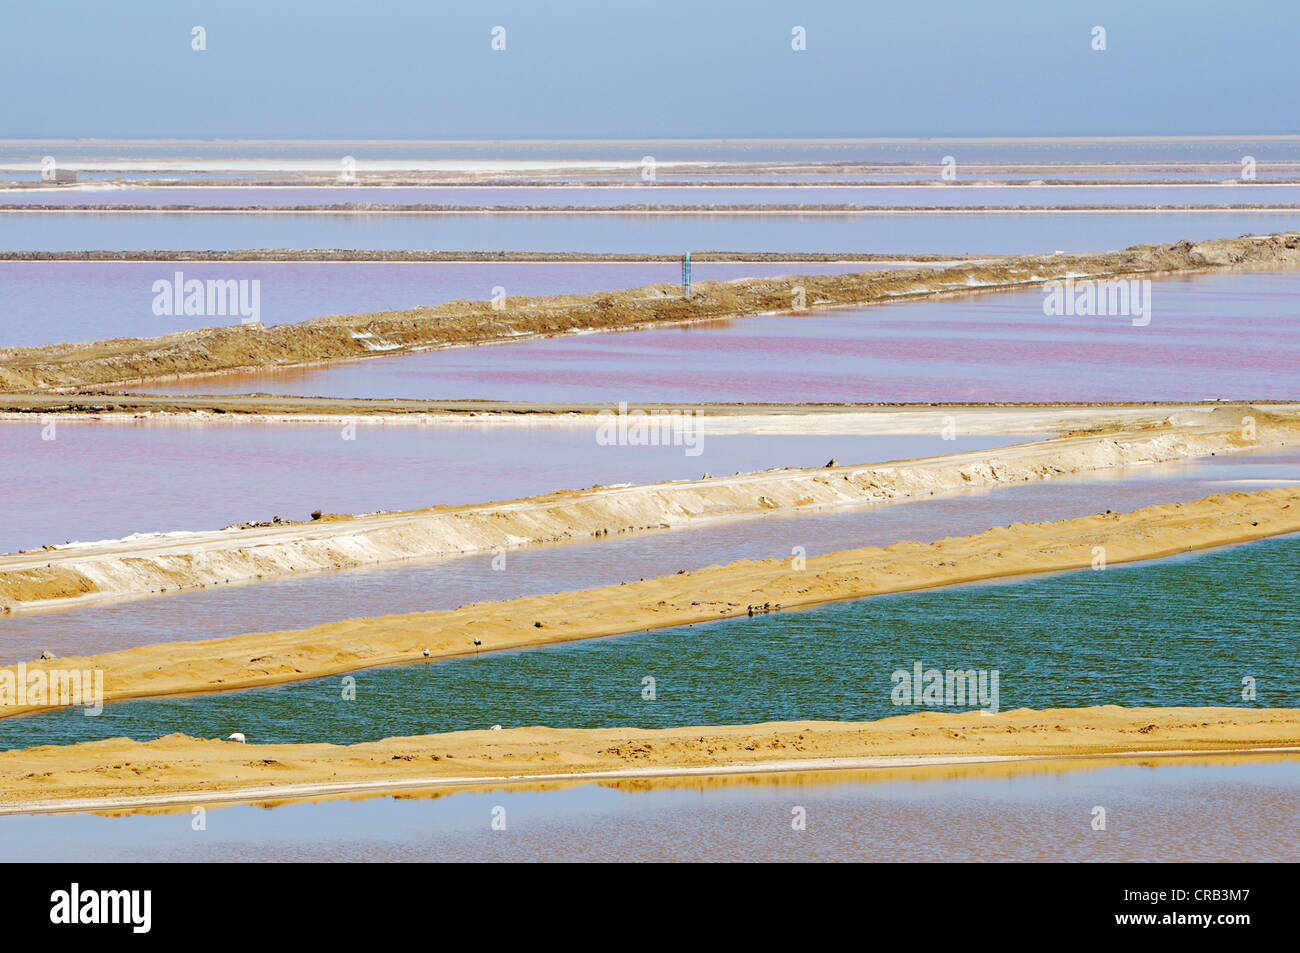 Les bassins d'eau utilisée pour la production de sel dans un marais salant dans le Parc National, partie de la Namibian Skeleton Coast National Park Banque D'Images